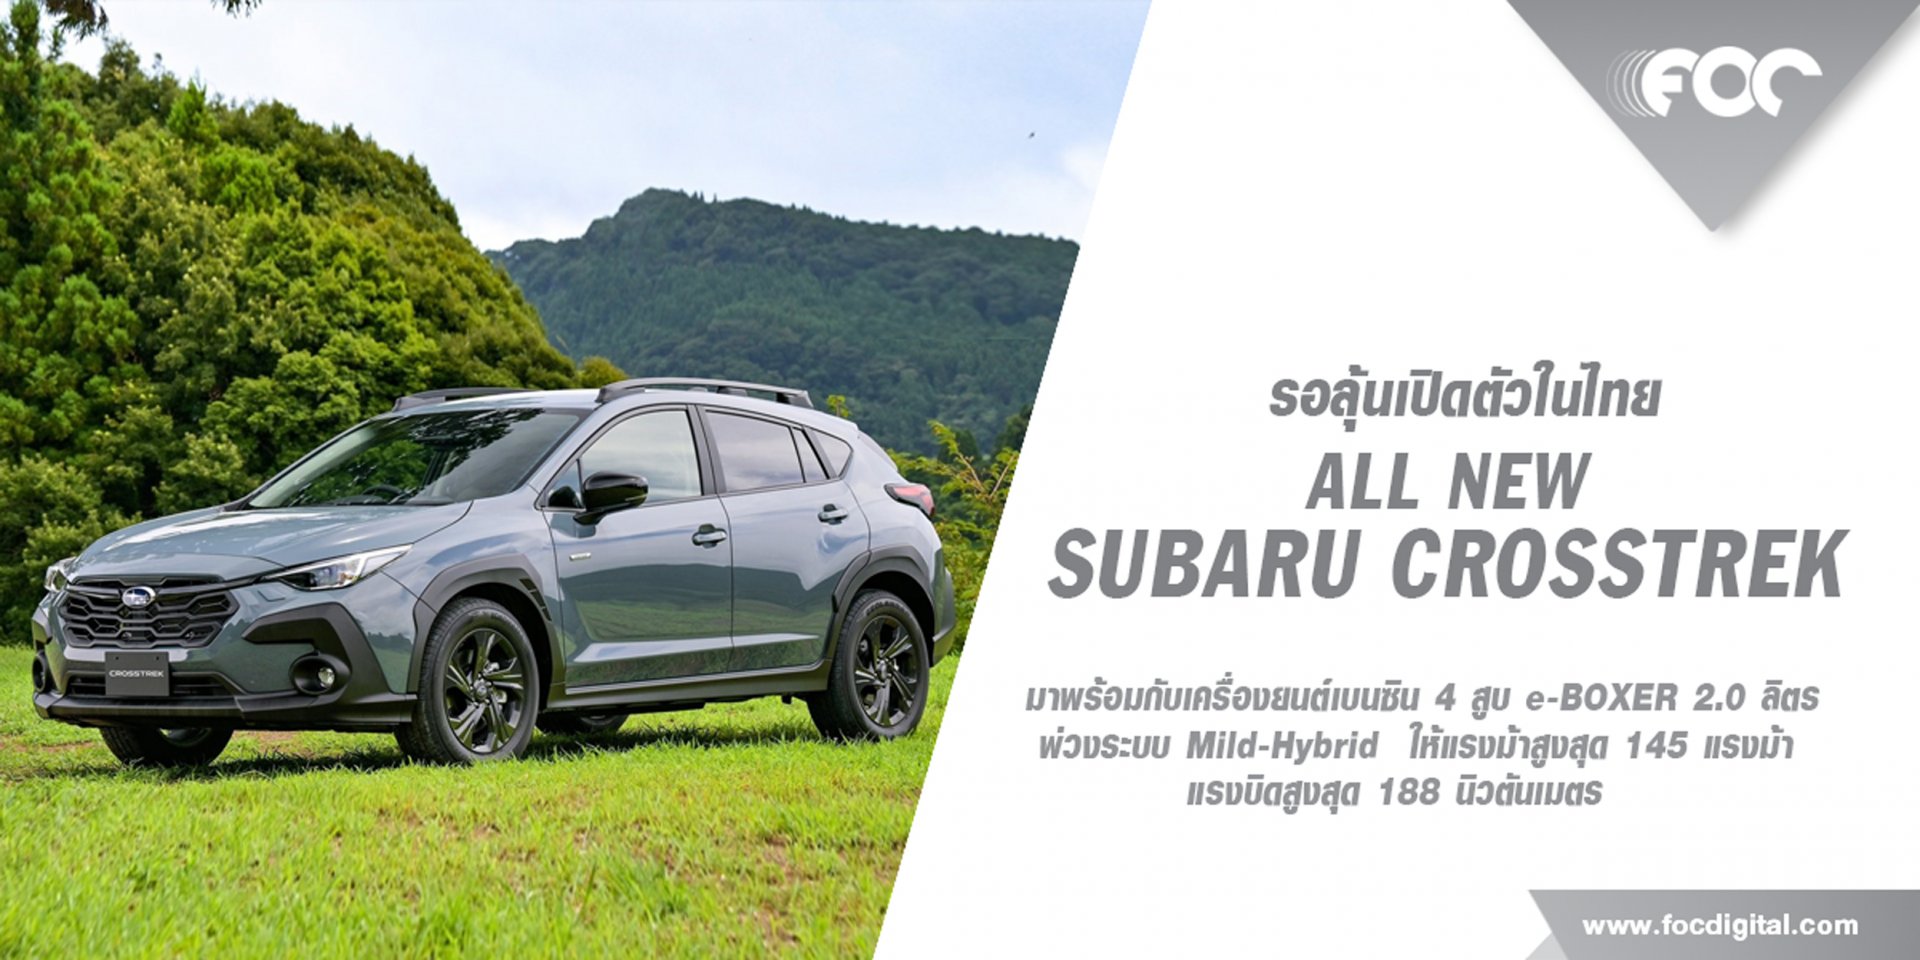 โบกมือลา Subaru XV พร้อมอ้าแขนรับ All New Subaru Crosstrek ว่าที่รถรุ่นใหม่ค่ายดาวลูกไก่ที่มาแทน XV ที่ทำตลาดมาอย่างยาวนาน